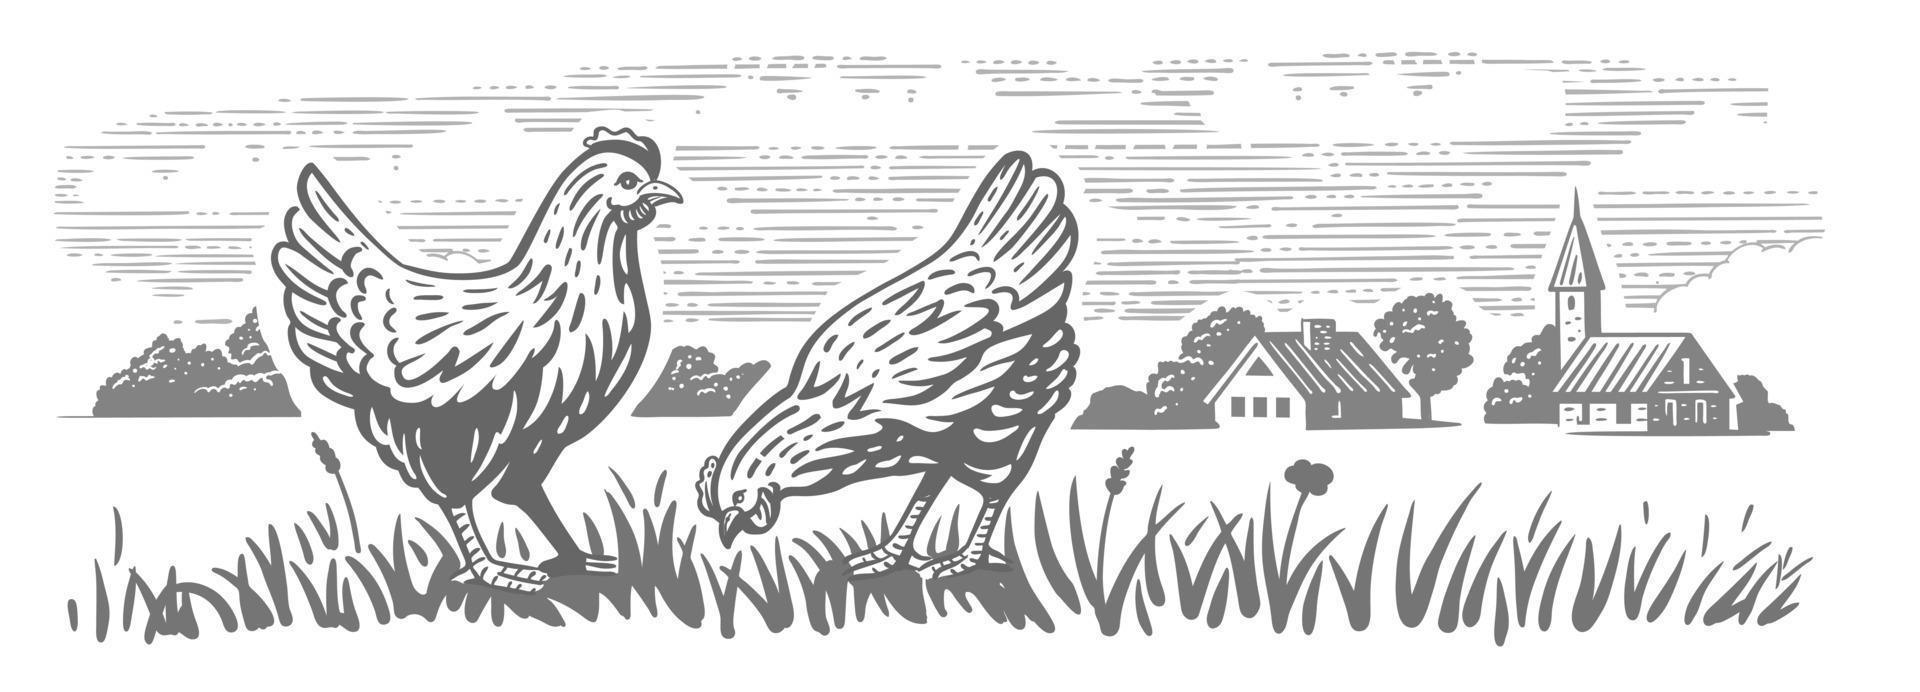 kip in landelijk dorp. biologisch boerderij landschap vector